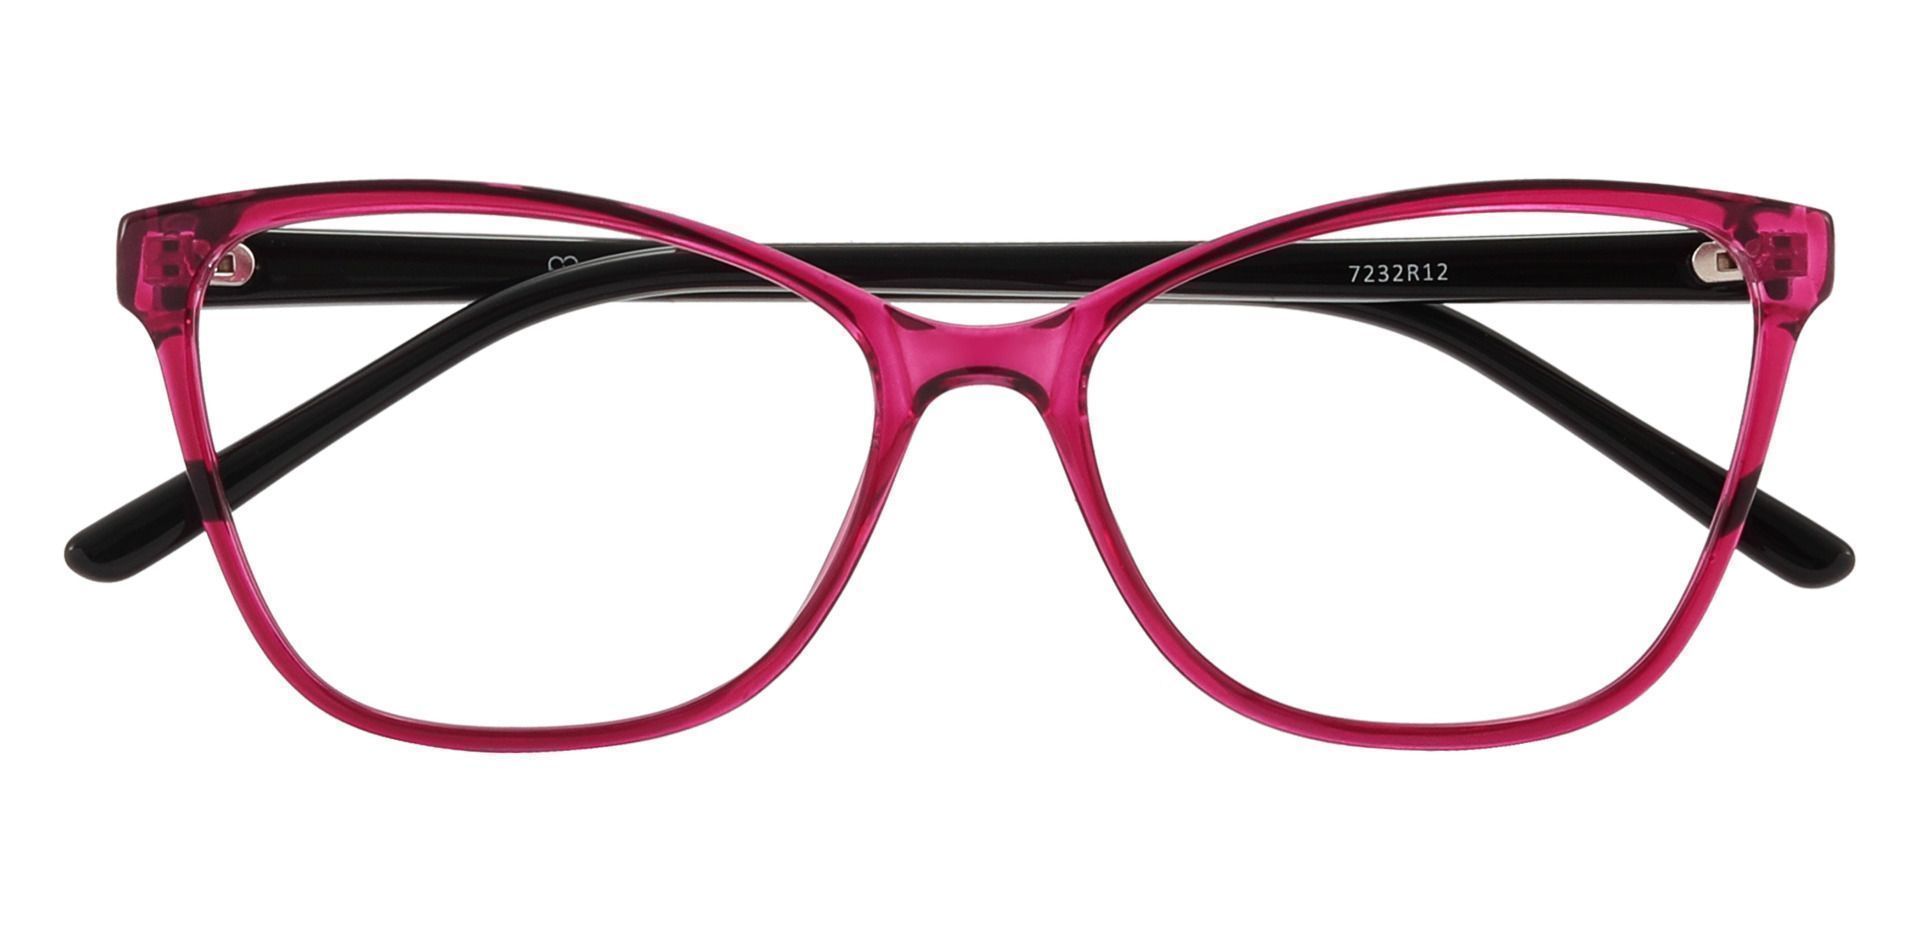 Giselle Cat Eye Prescription Glasses - Red